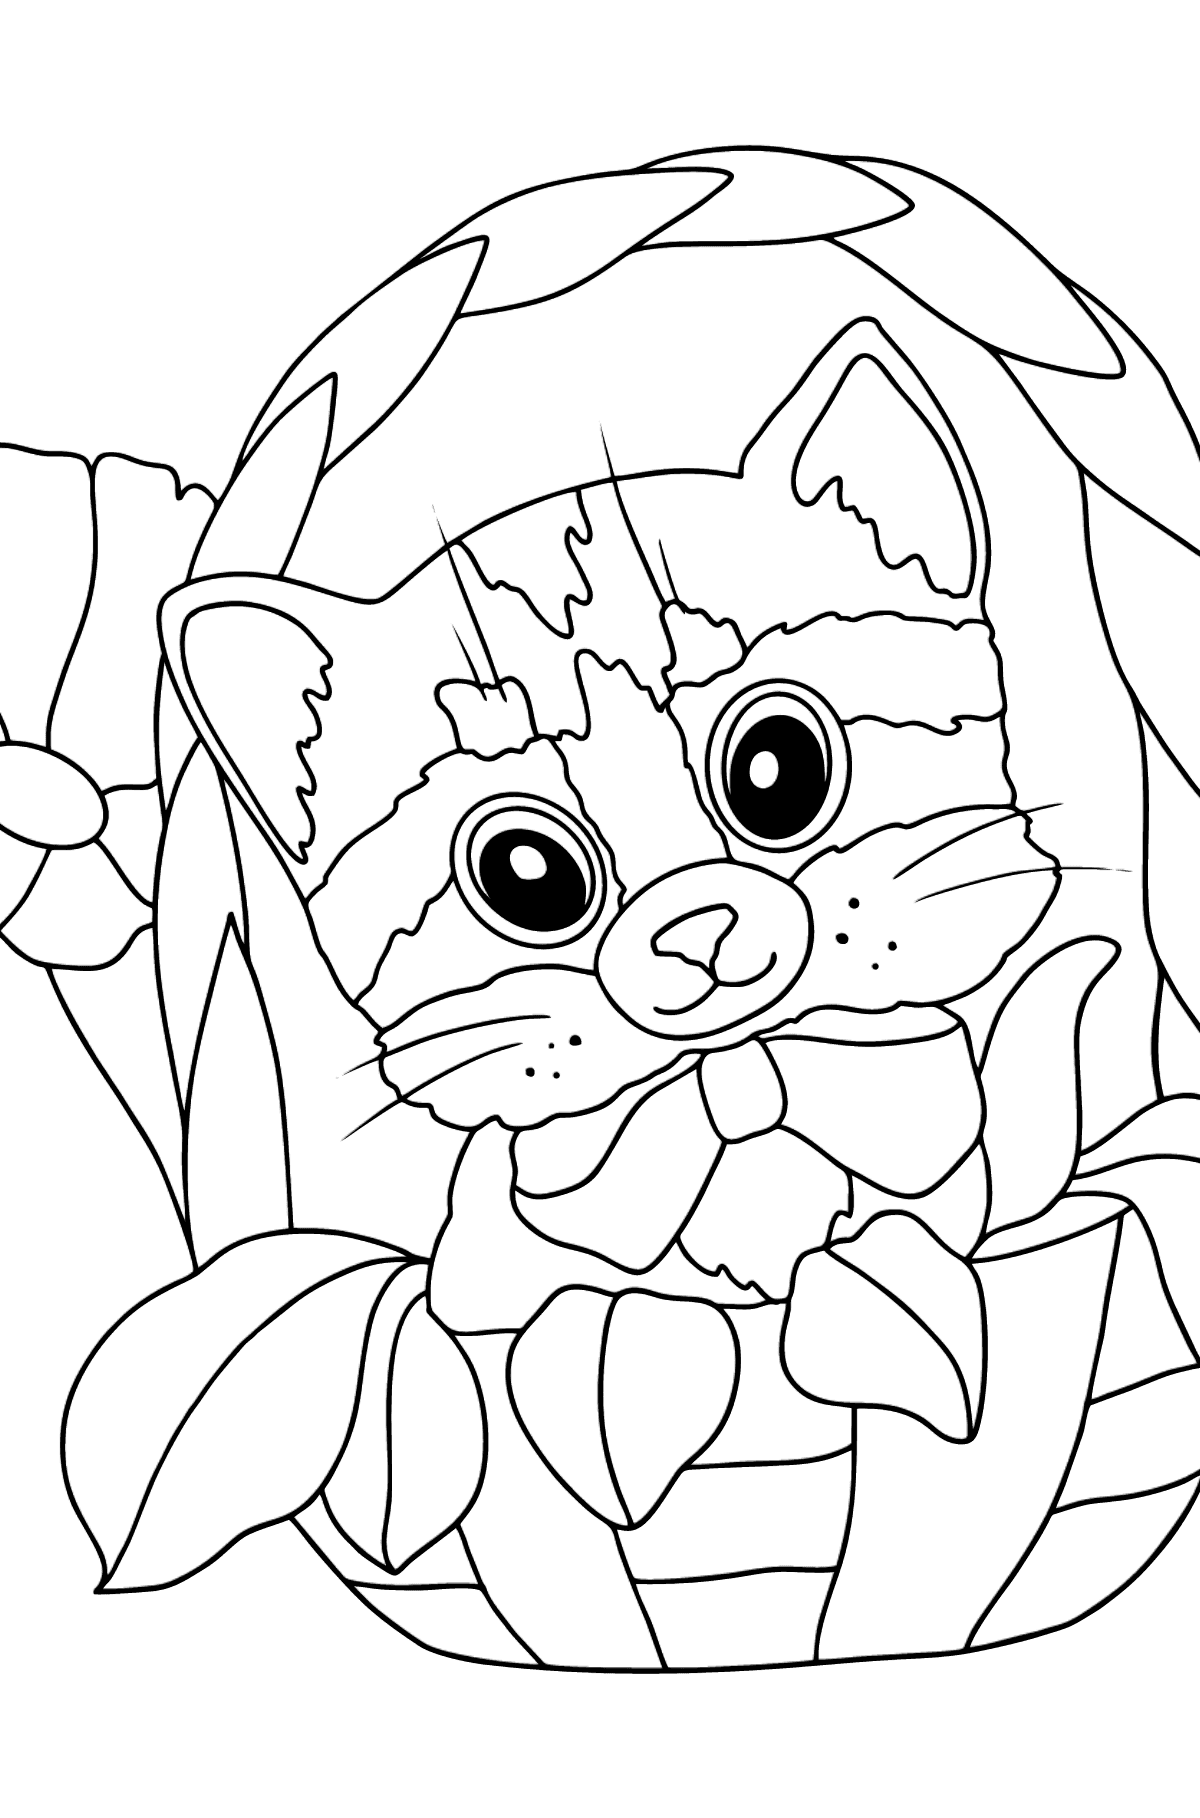 Раскраска котенок в корзине - Картинки для Детей